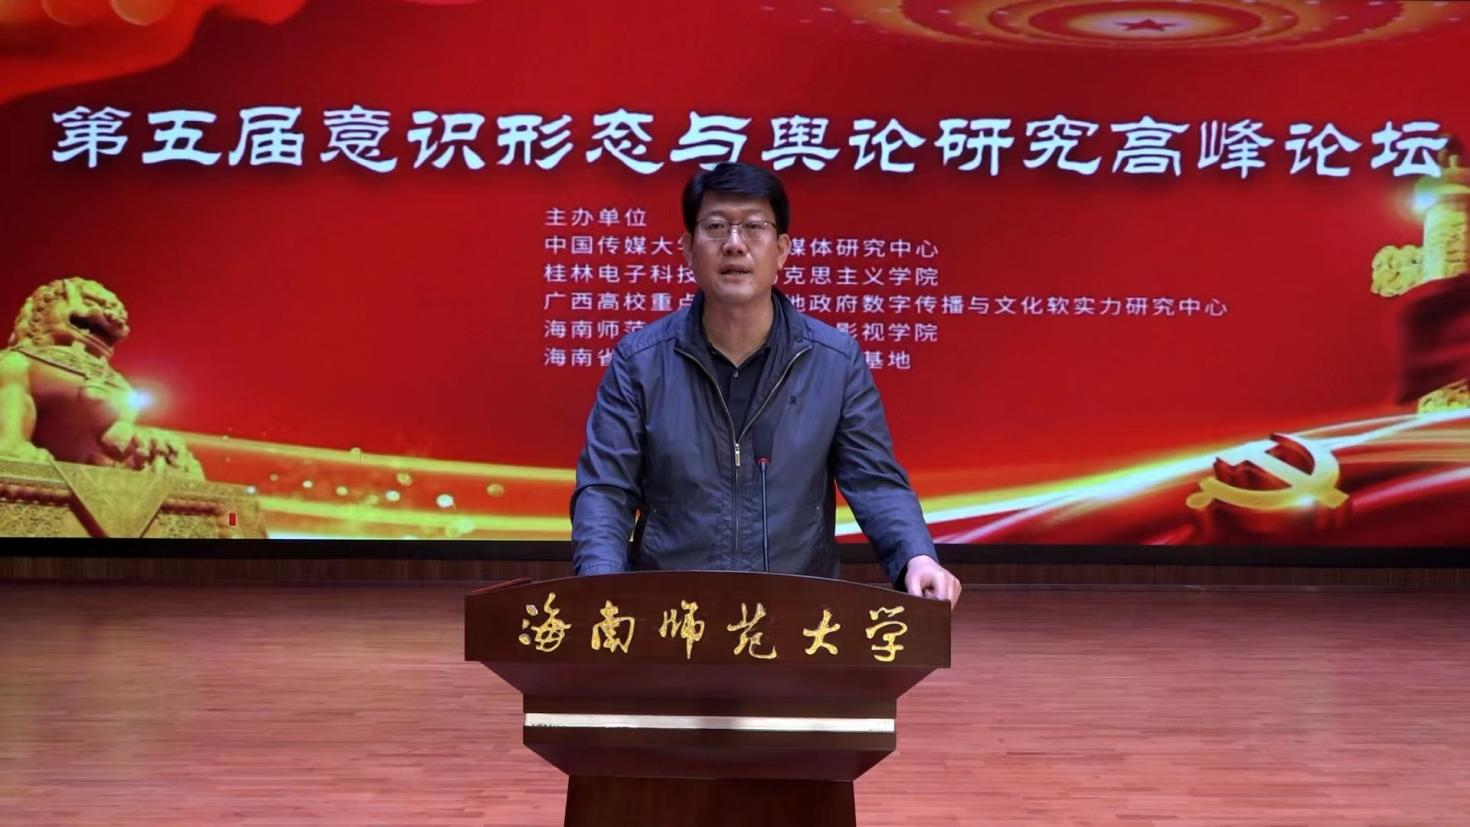 我院发起的第五届意识形态与舆论研究高峰论坛在桂林举行